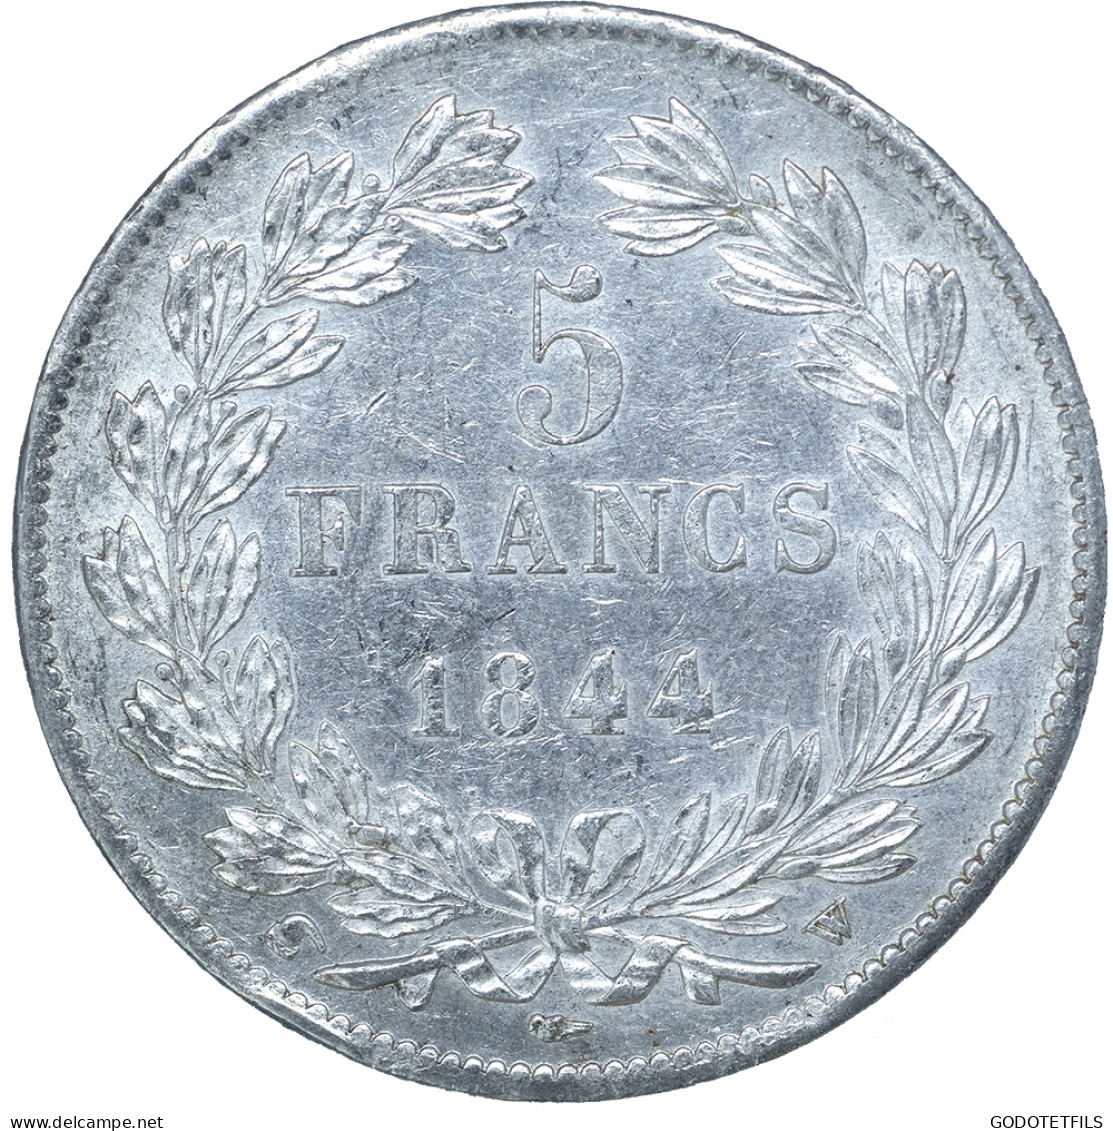 Louis-Philippe-5 Francs 1844 Lille - 5 Francs